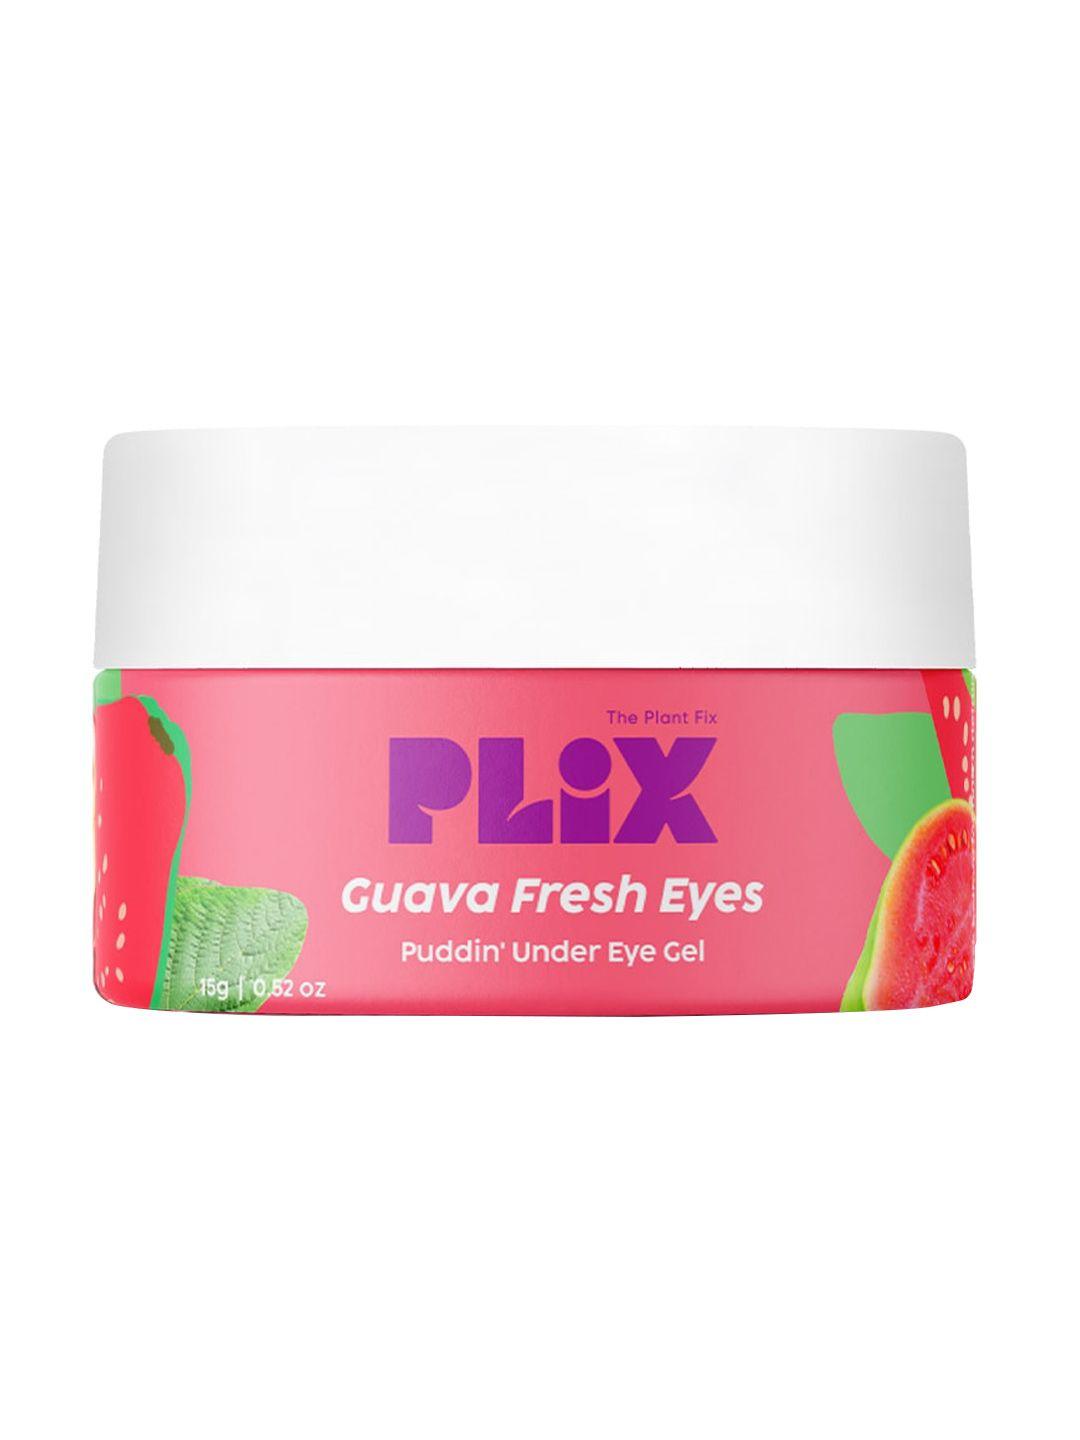 plix the plant fix guava fresh eyes puddin' under-eye gel - 15 g